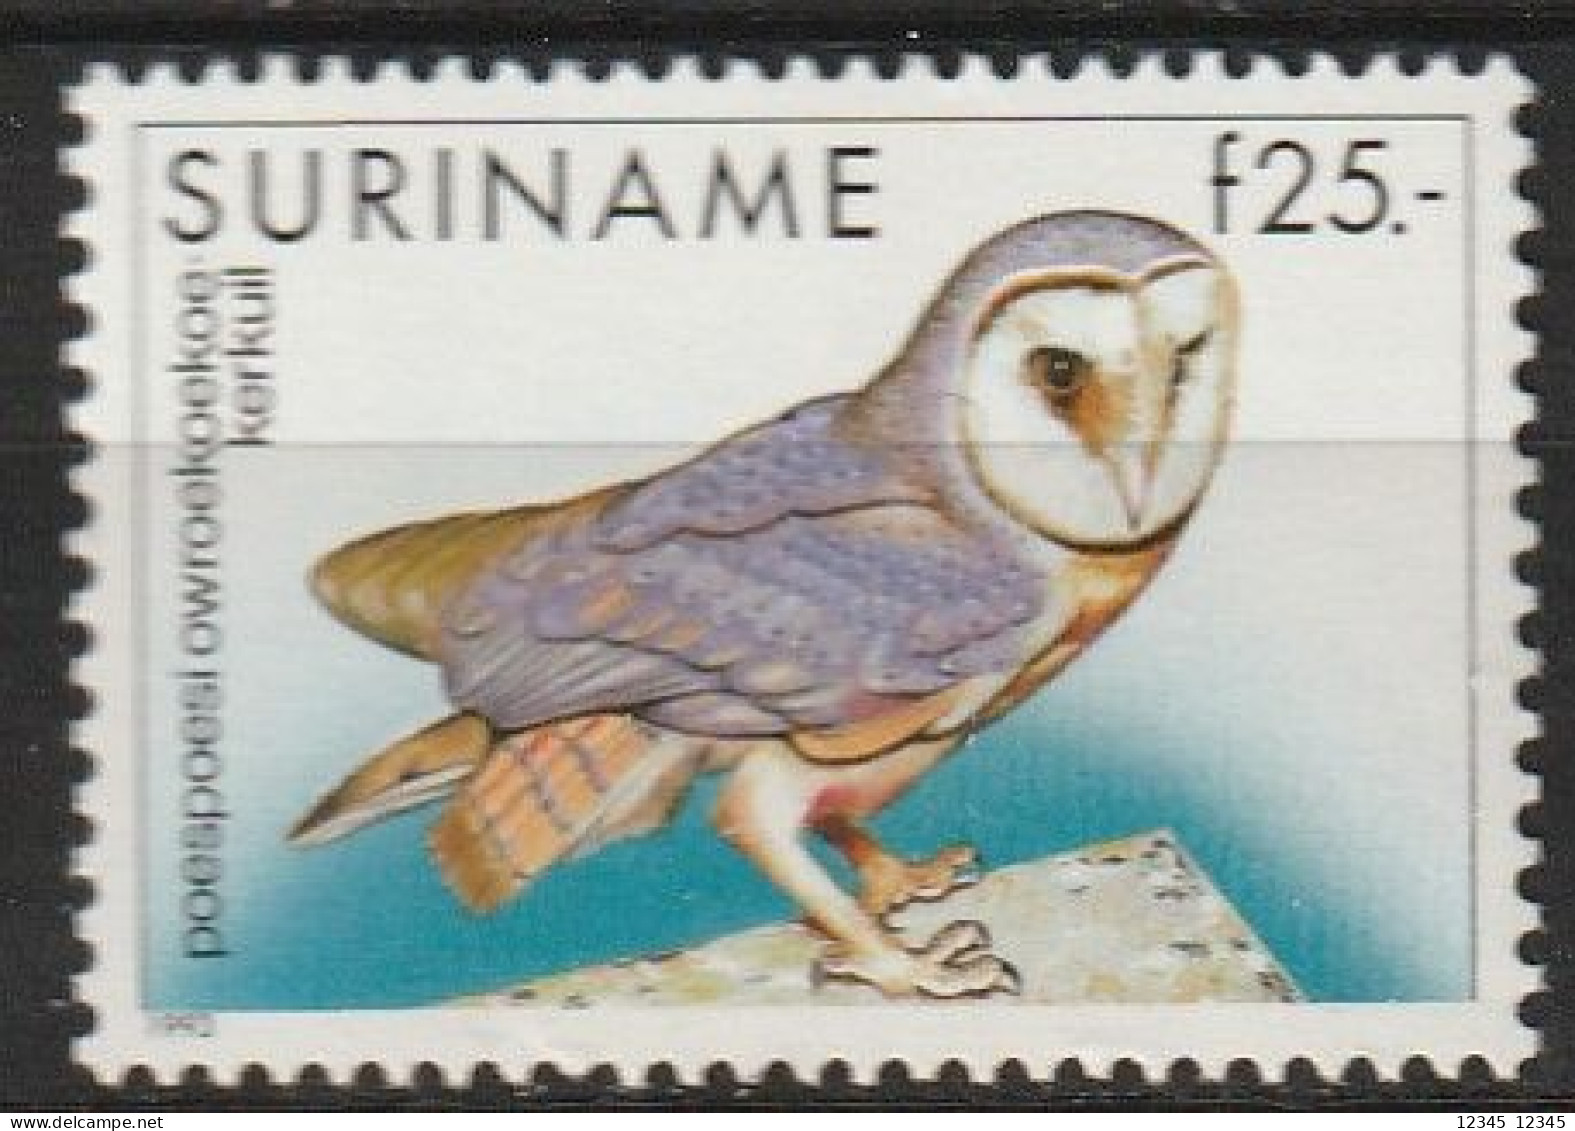 Suriname 1993, Postfris MNH, Birds, Owl - Surinam